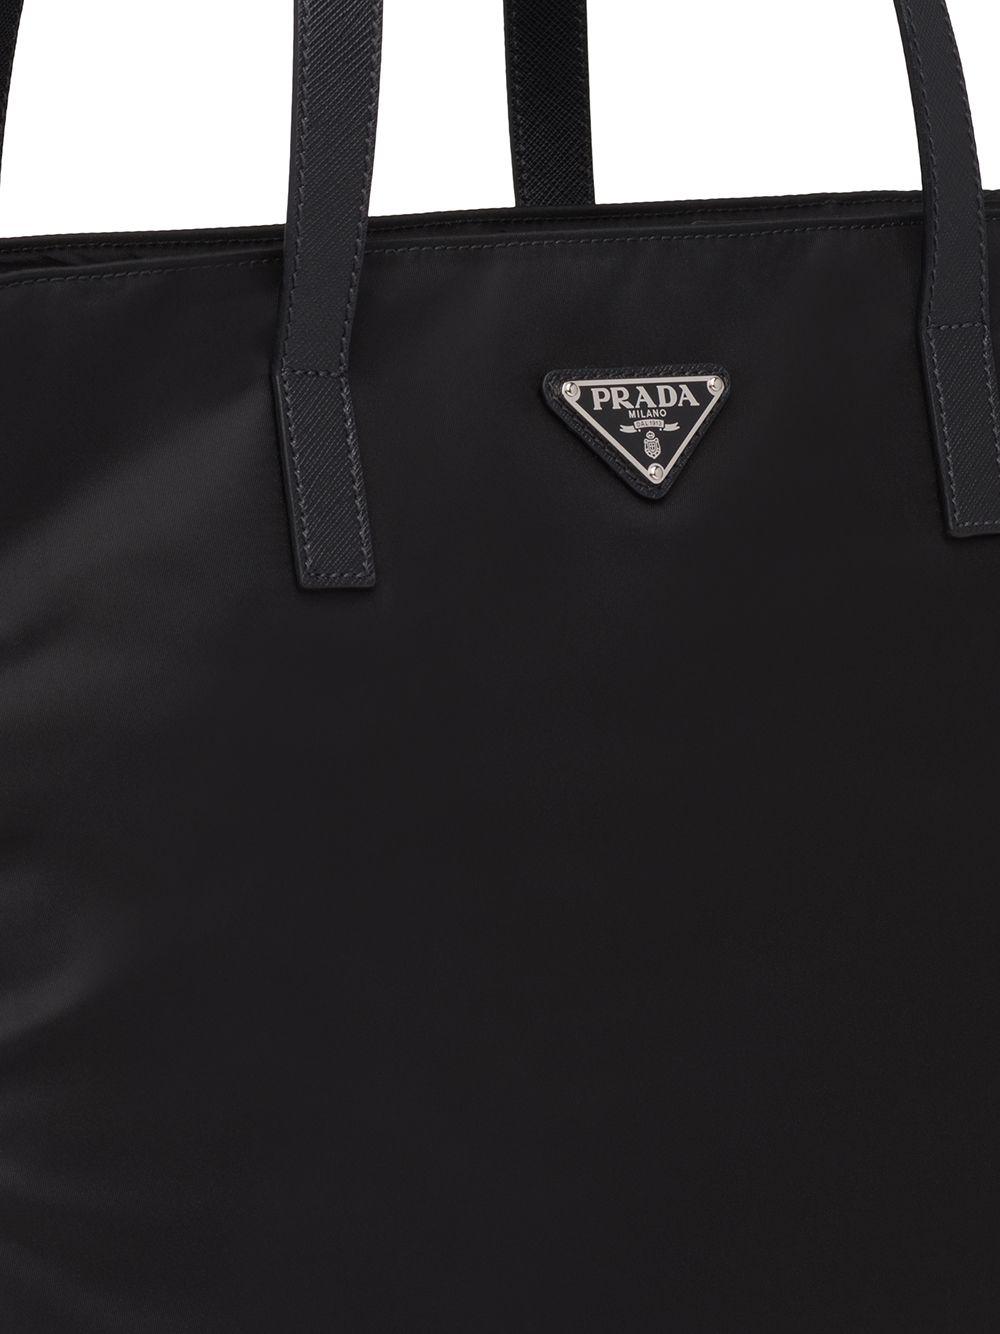 Prada Nylon Tote Bag in Black for Men | Lyst